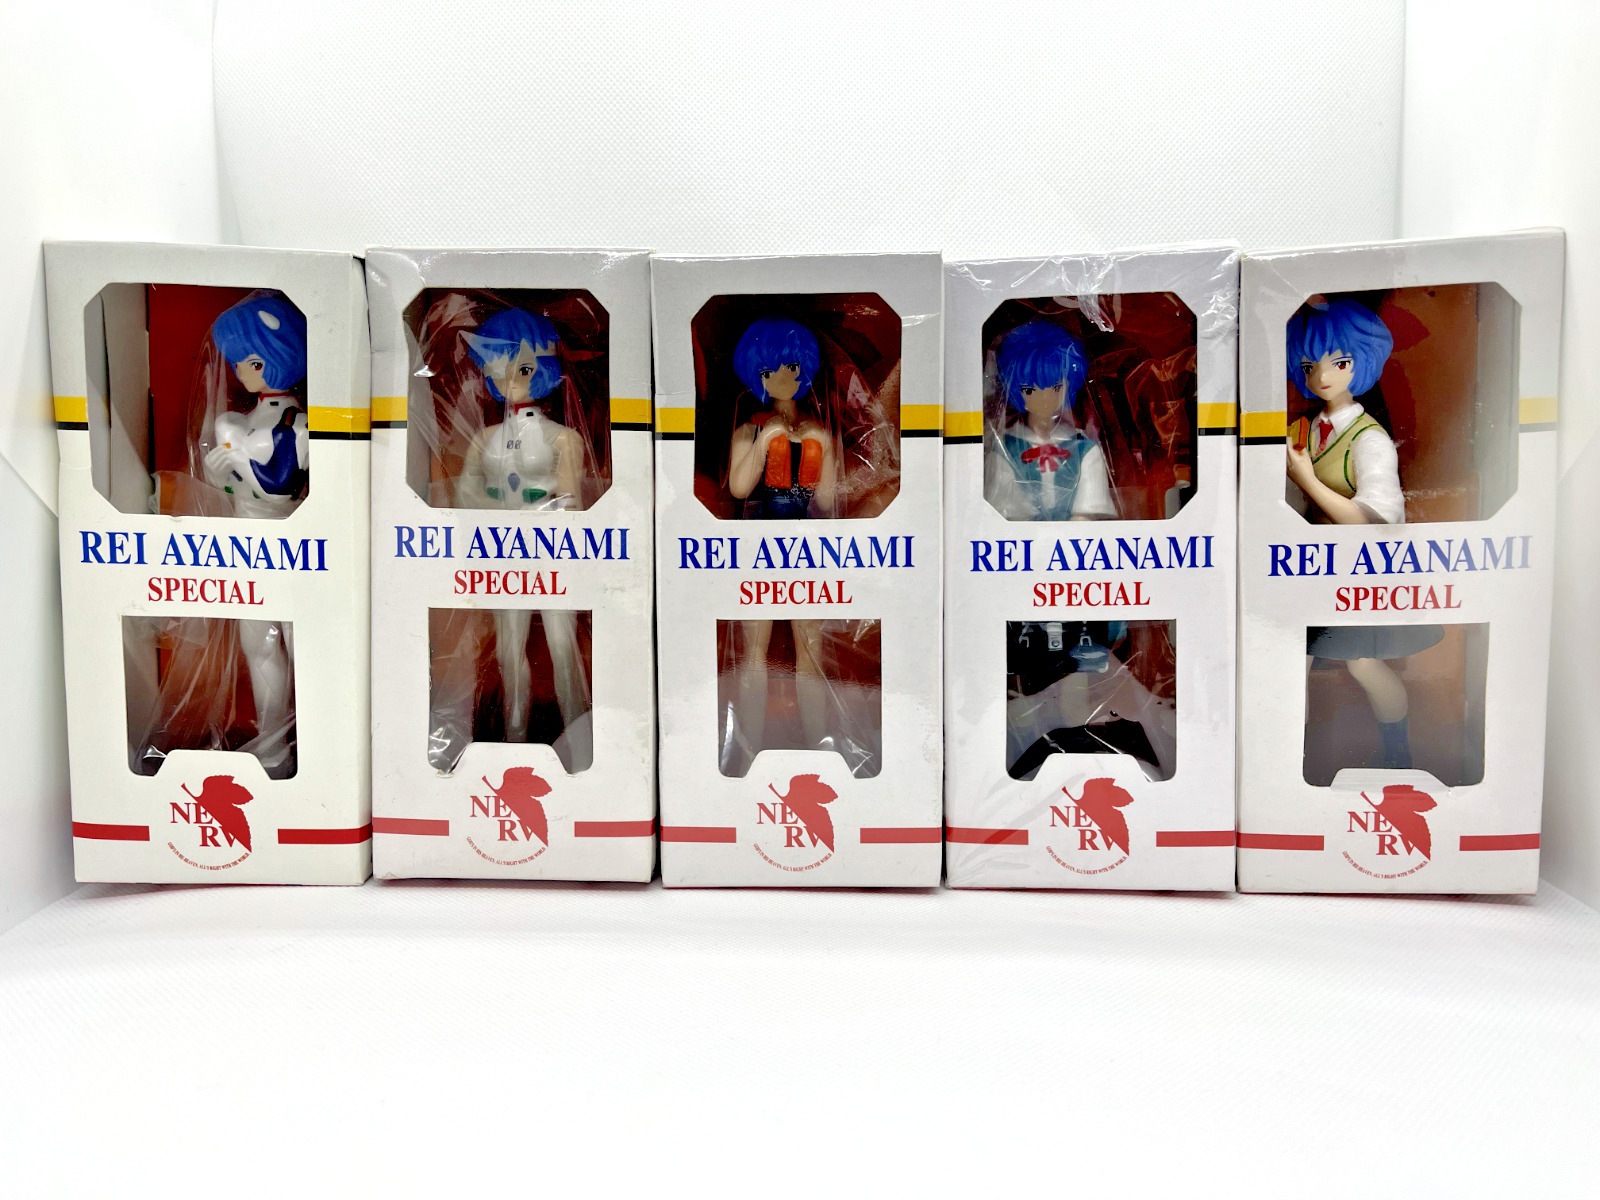 Neon Genesis Evangelion Rei Ayanami Special Figure 5 Complete set of 5 types JPN